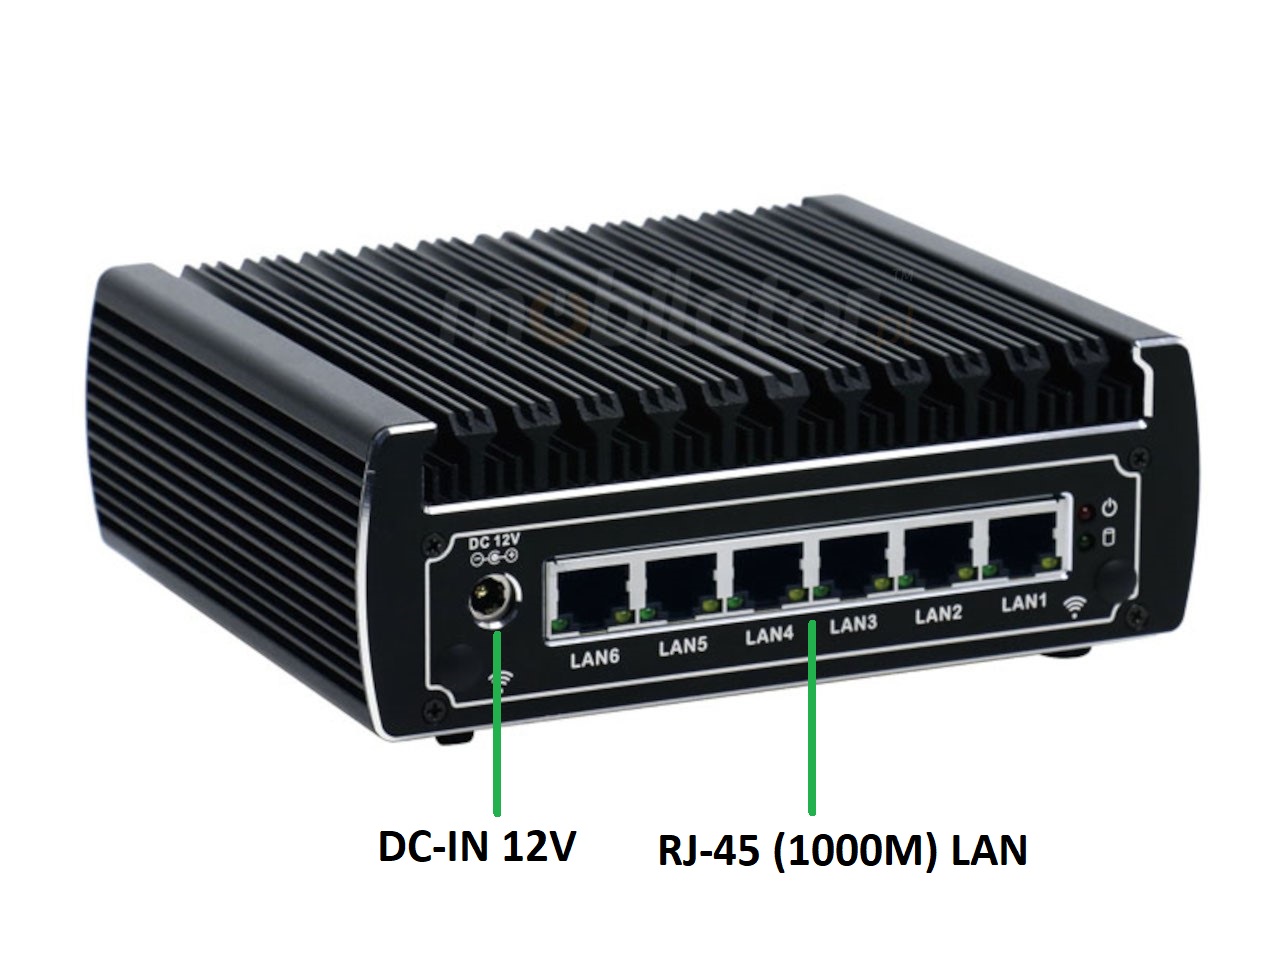   IBOX N133 v.10, zcza ty SSD HDD DDR4 WIFI BLUETOOTH, przemysowy, may, szybki, niezawodny, fanless, industrial, small, LAN, INTEL i3